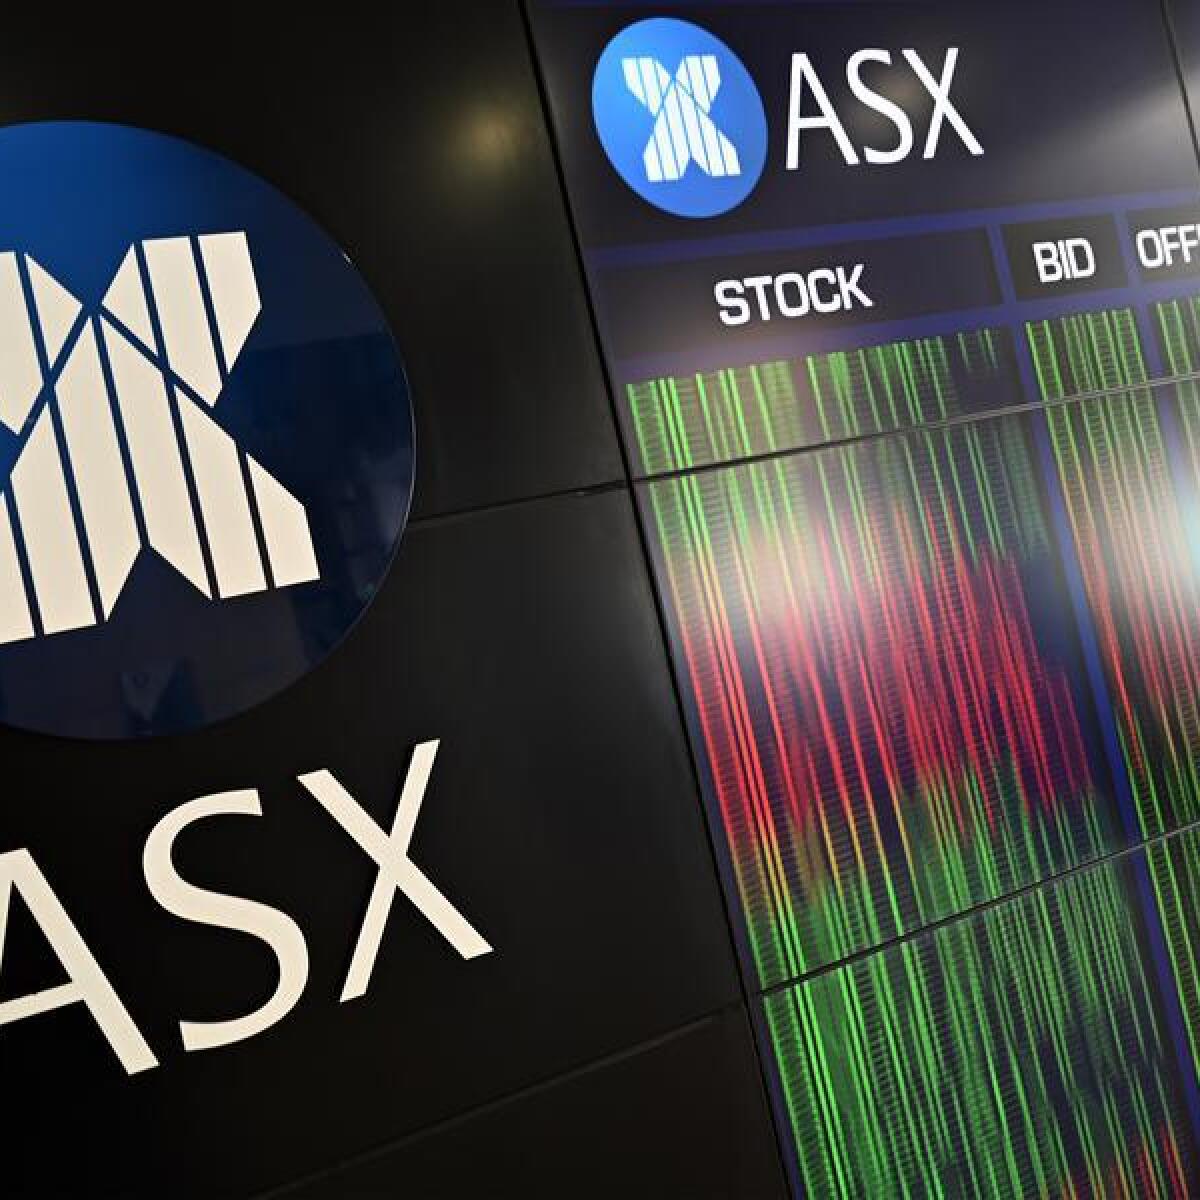 ASX STOCK